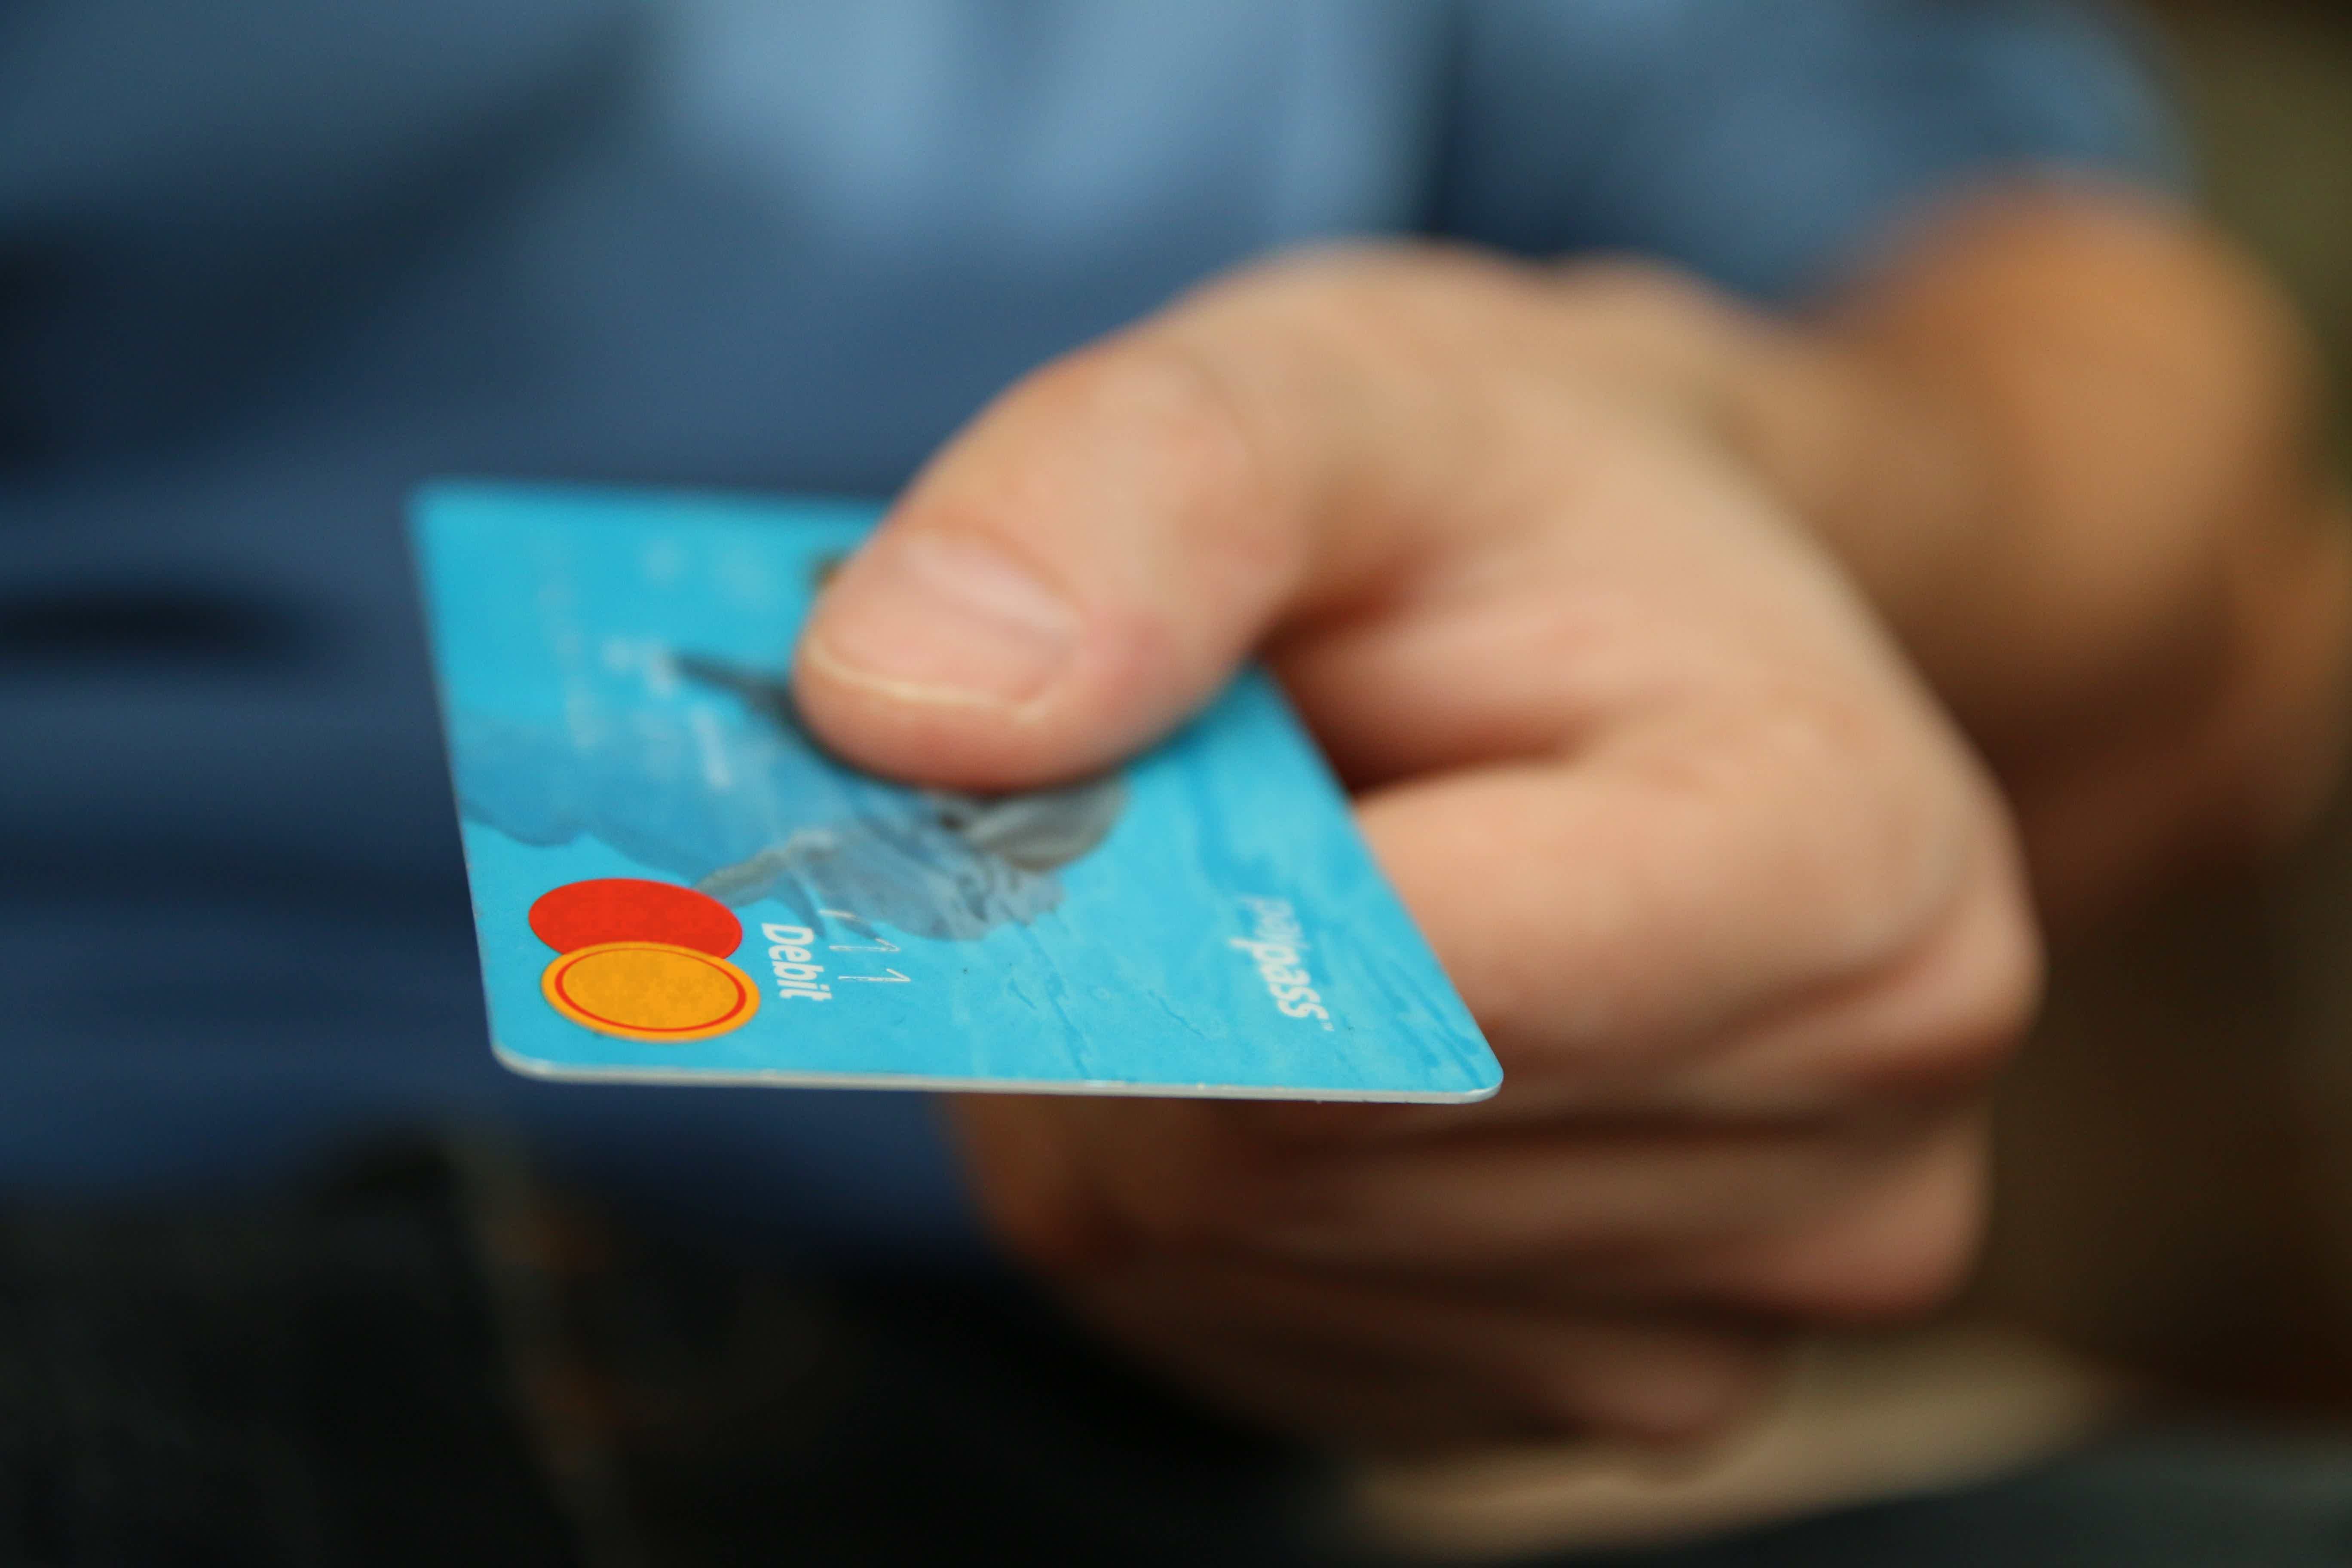 Mas, afinal, o cartão de crédito Banrisul para negativados vale a pena? Fonte: Pexels.